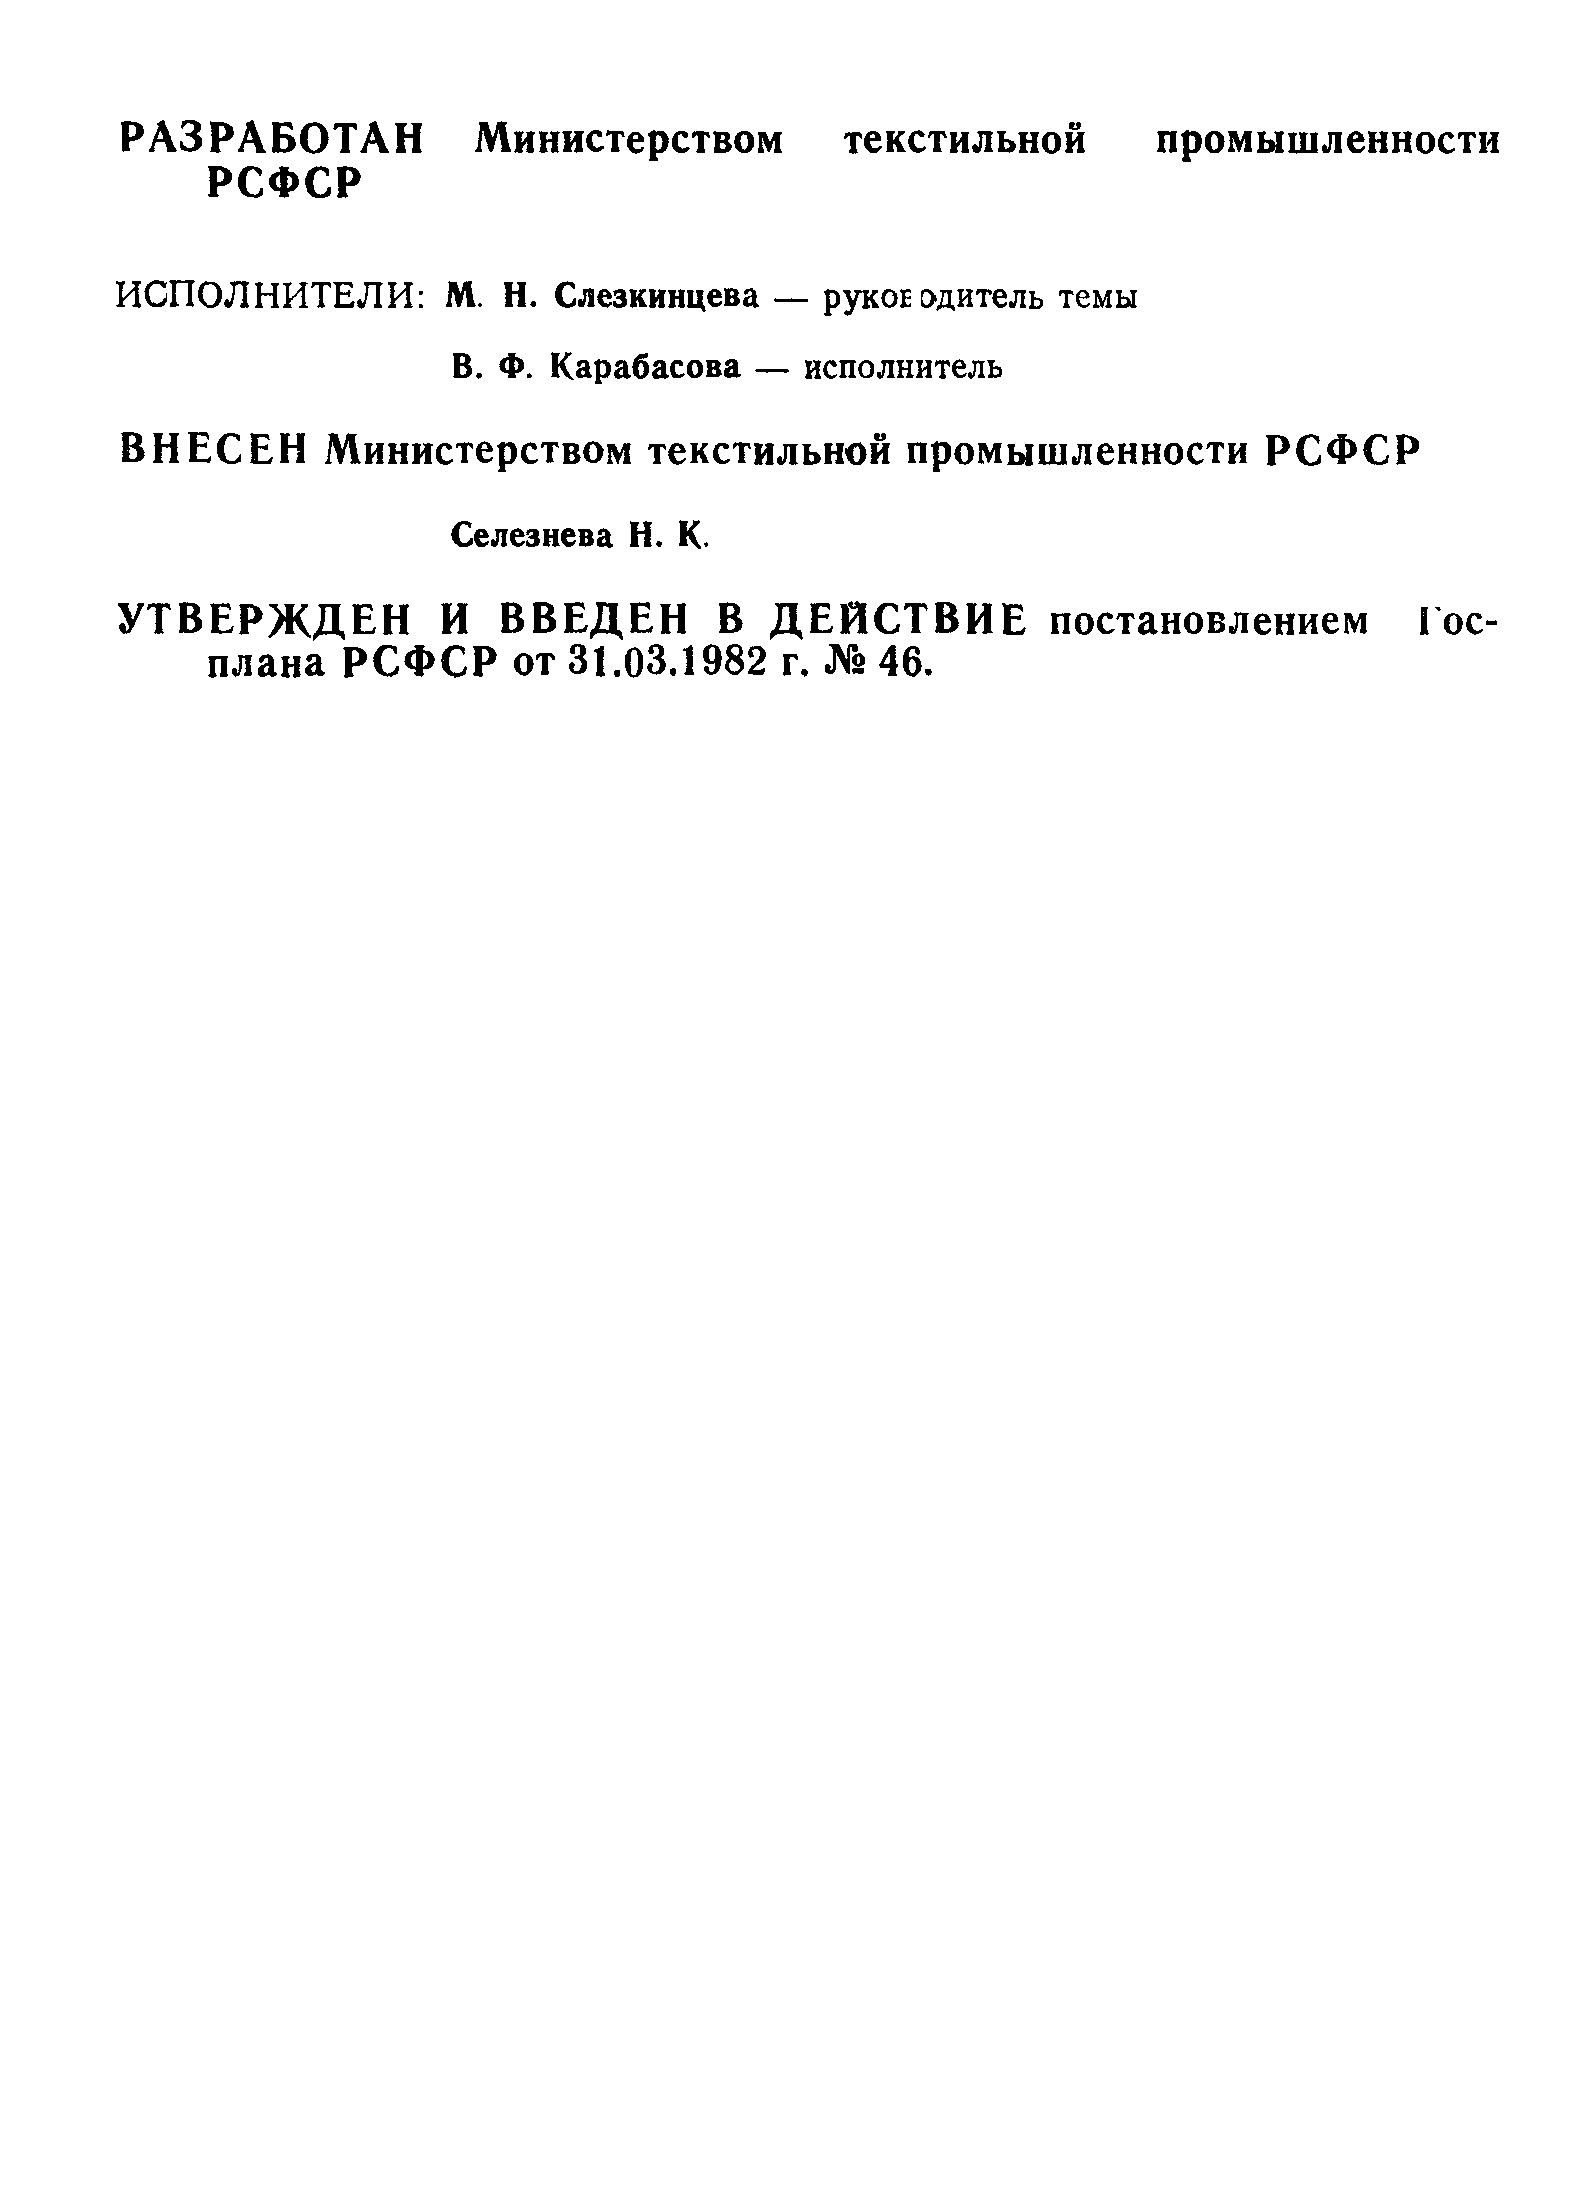 РСТ РСФСР 114-82